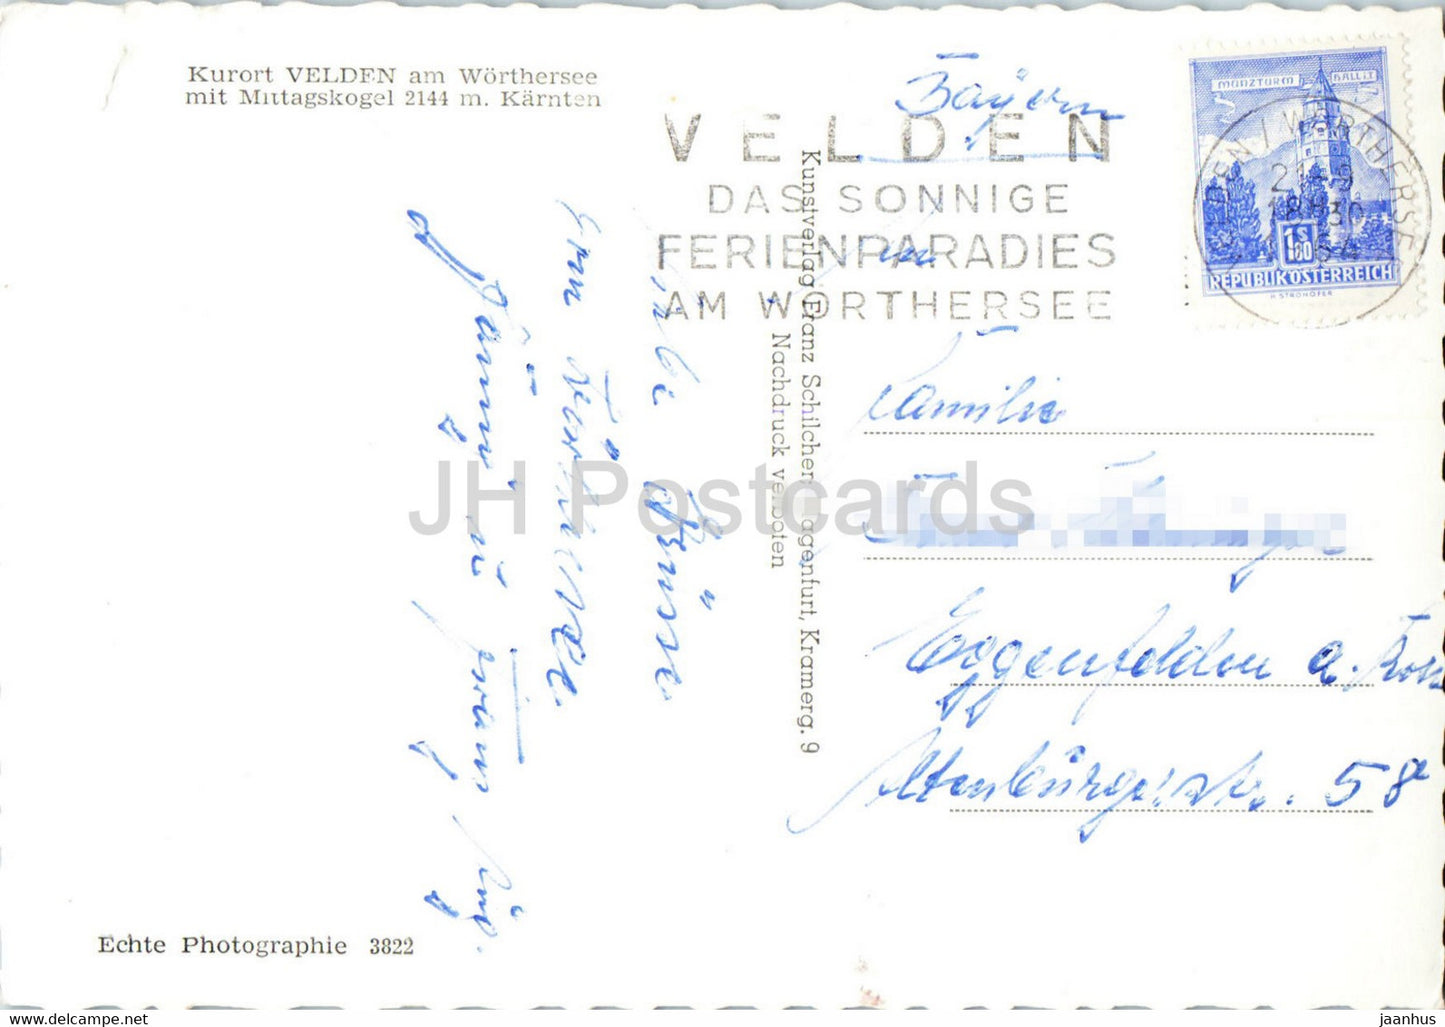 Kurort Velden am Worthersee mit Mittagskogel 2144 m - carte postale ancienne - 1964 - Autriche - utilisé